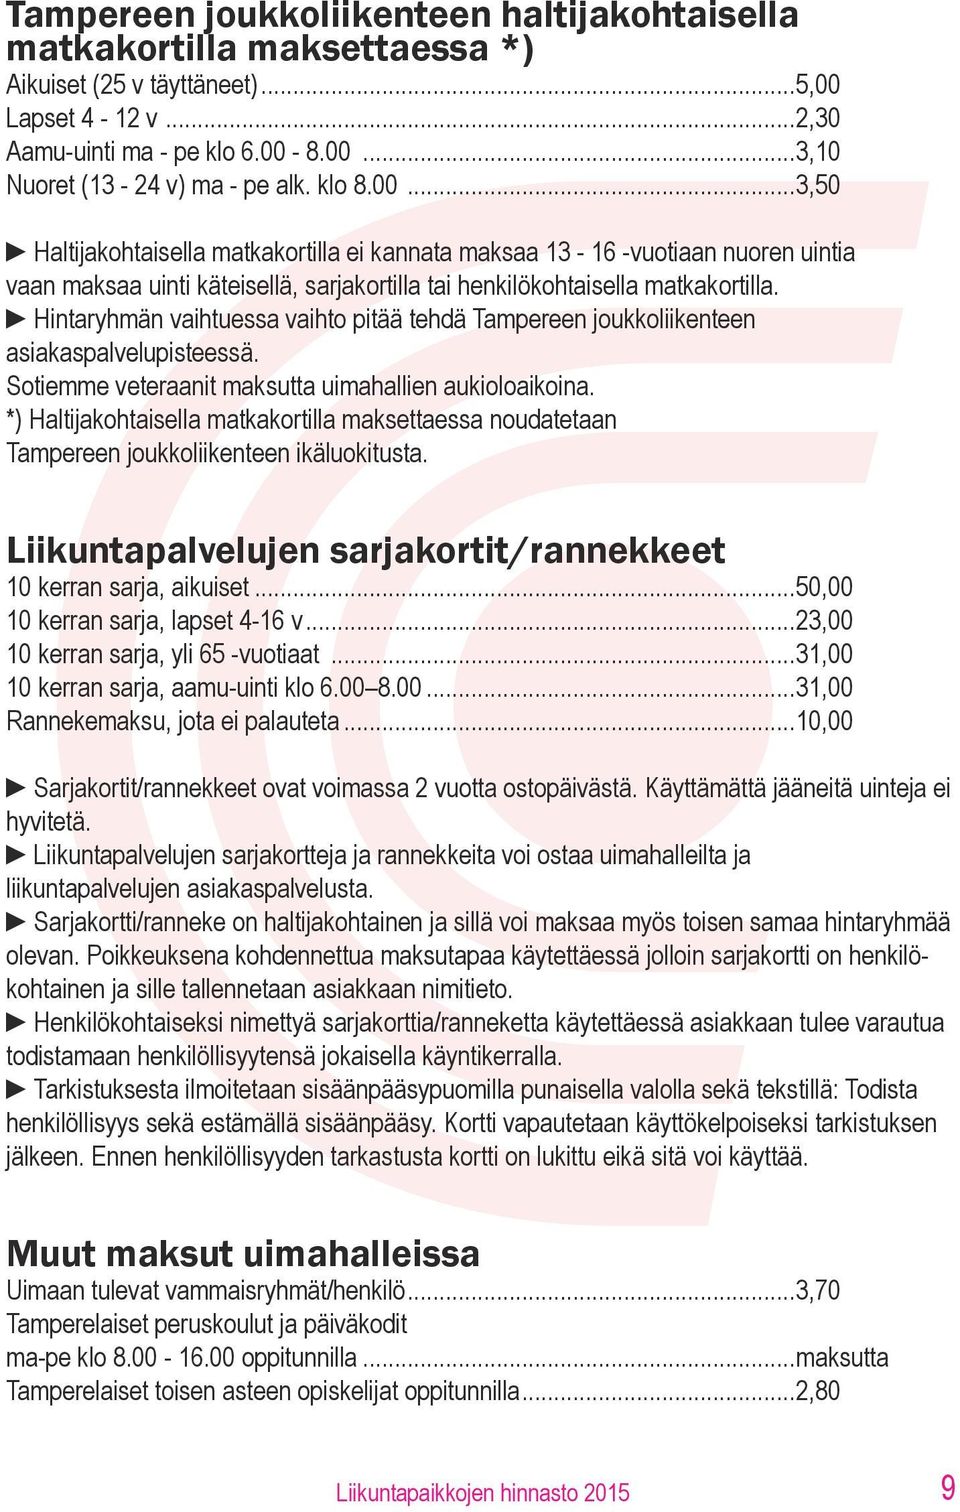 Hintaryhmän vaihtuessa vaihto pitää tehdä Tampereen joukkoliikenteen asiakaspalvelupisteessä. Sotiemme veteraanit maksutta uimahallien aukioloaikoina.